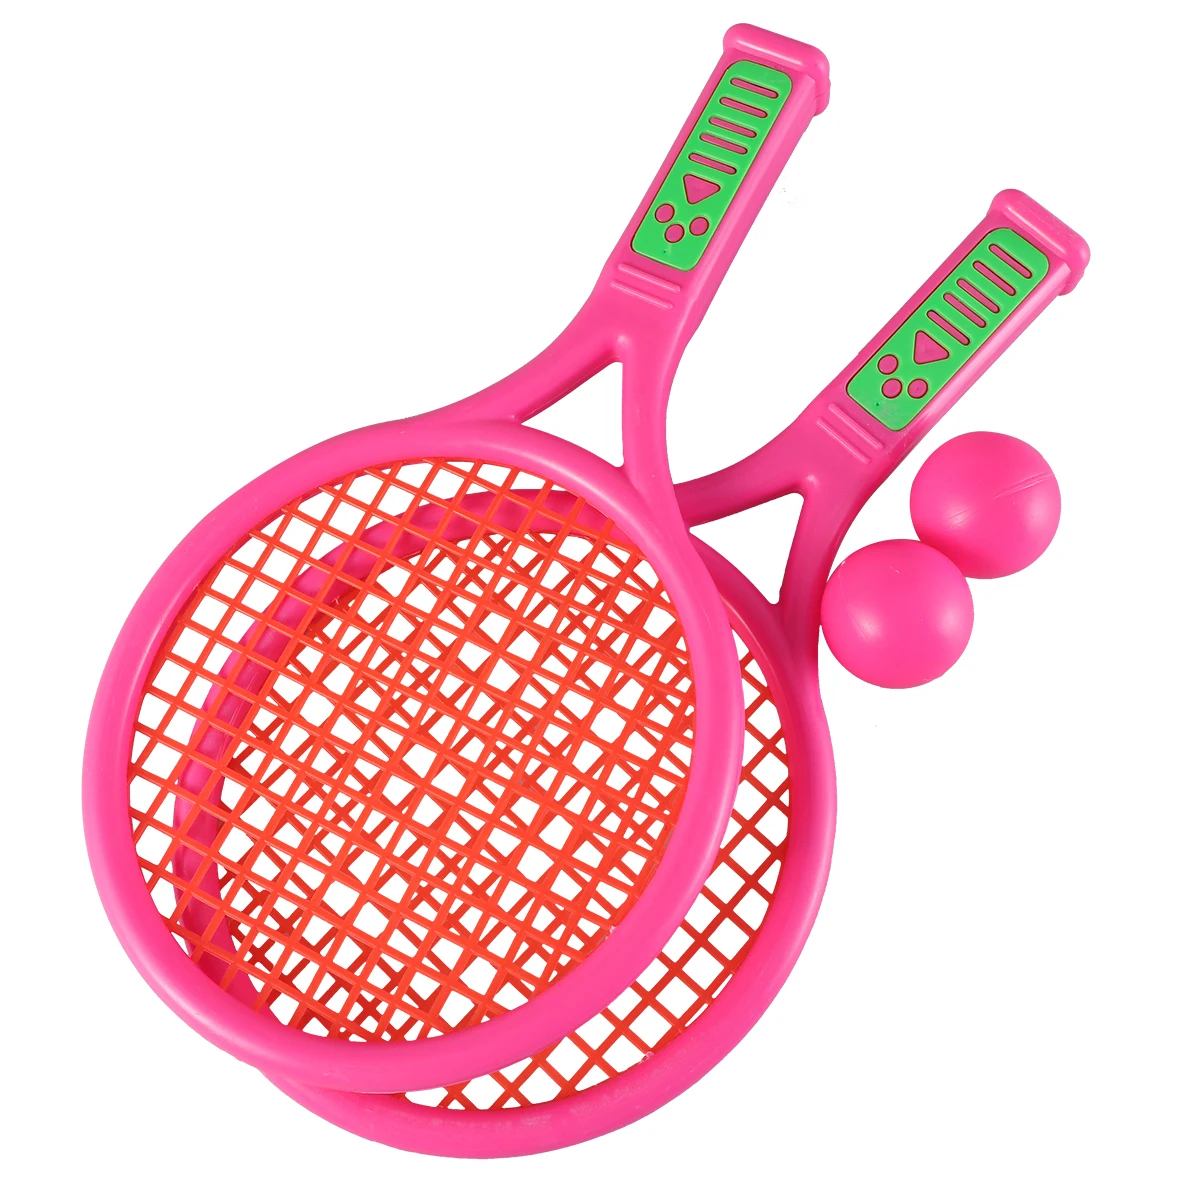 Ракетки тенниса детей